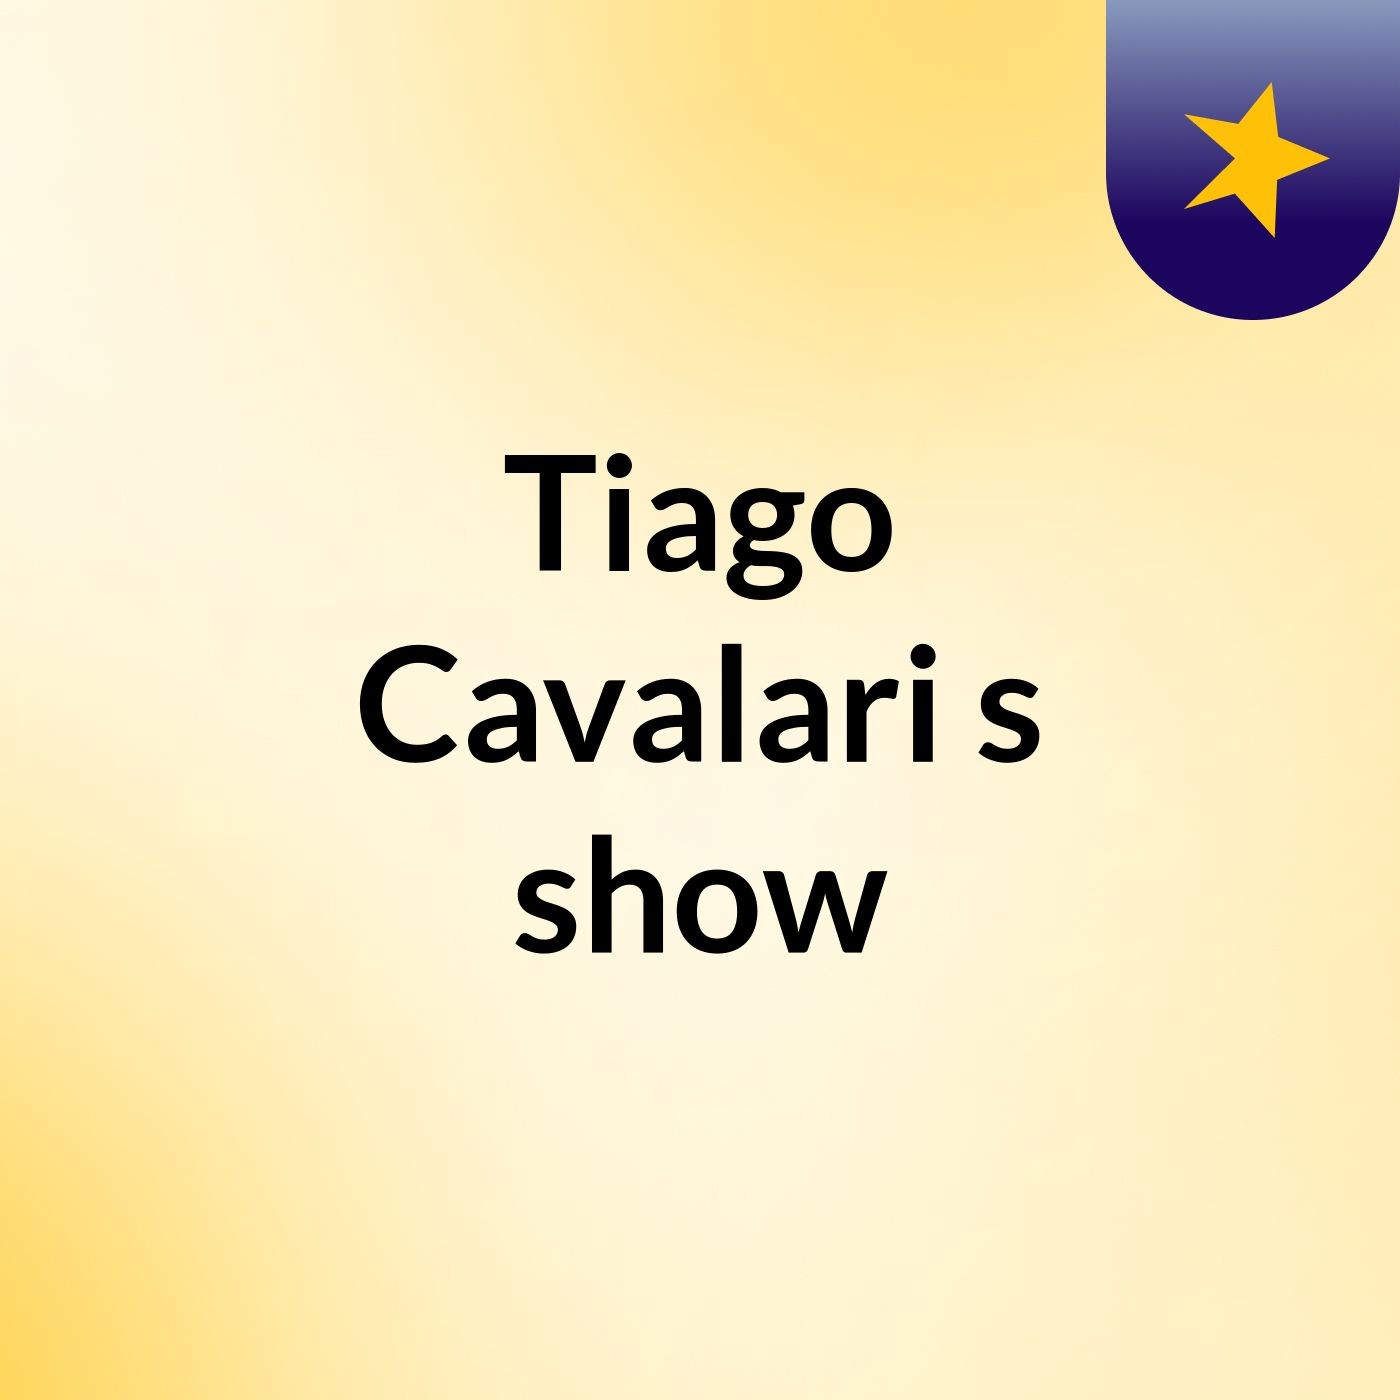 Tiago Cavalari's show